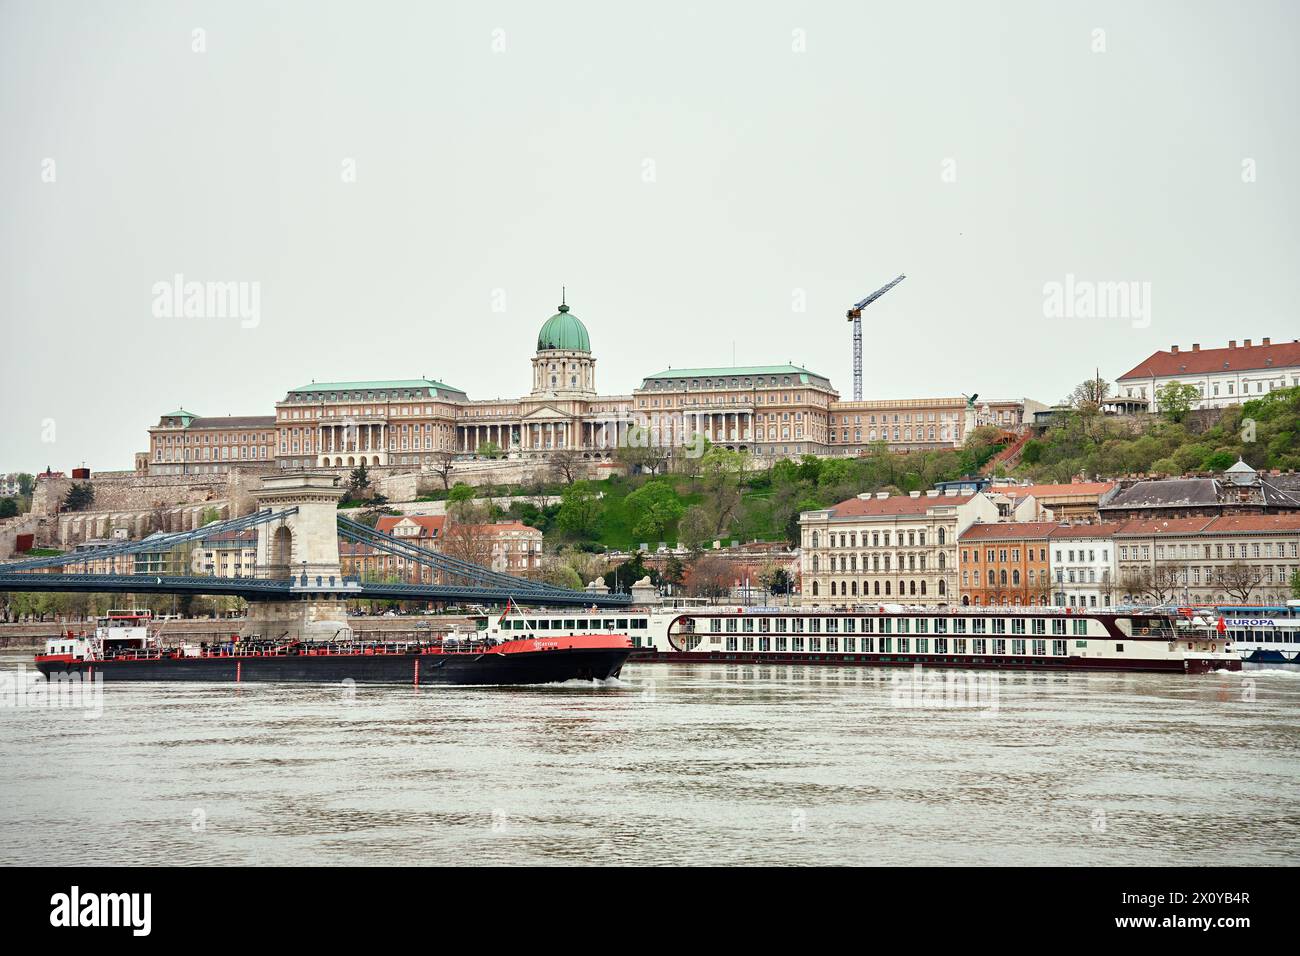 Vue panoramique sur la skyline de Budapest. Château Grand Buda dans la capitale de la Hongrie. Architecture historique en Europe Banque D'Images